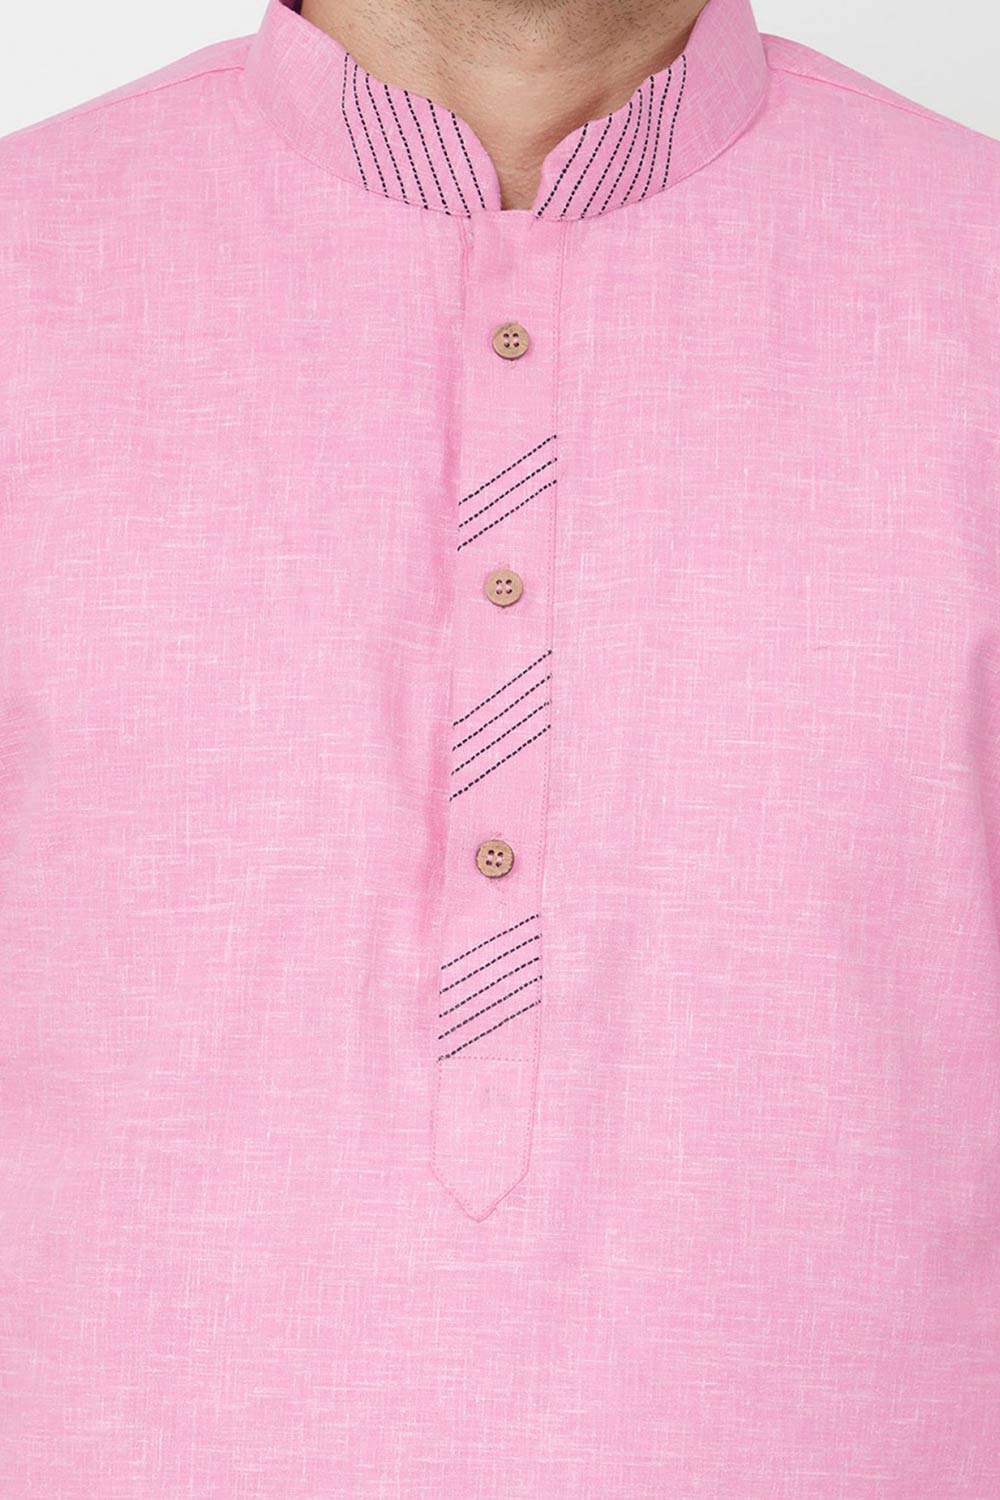 Buy Men's Blended Cotton Solid Kurta Set in Pink Online - Front